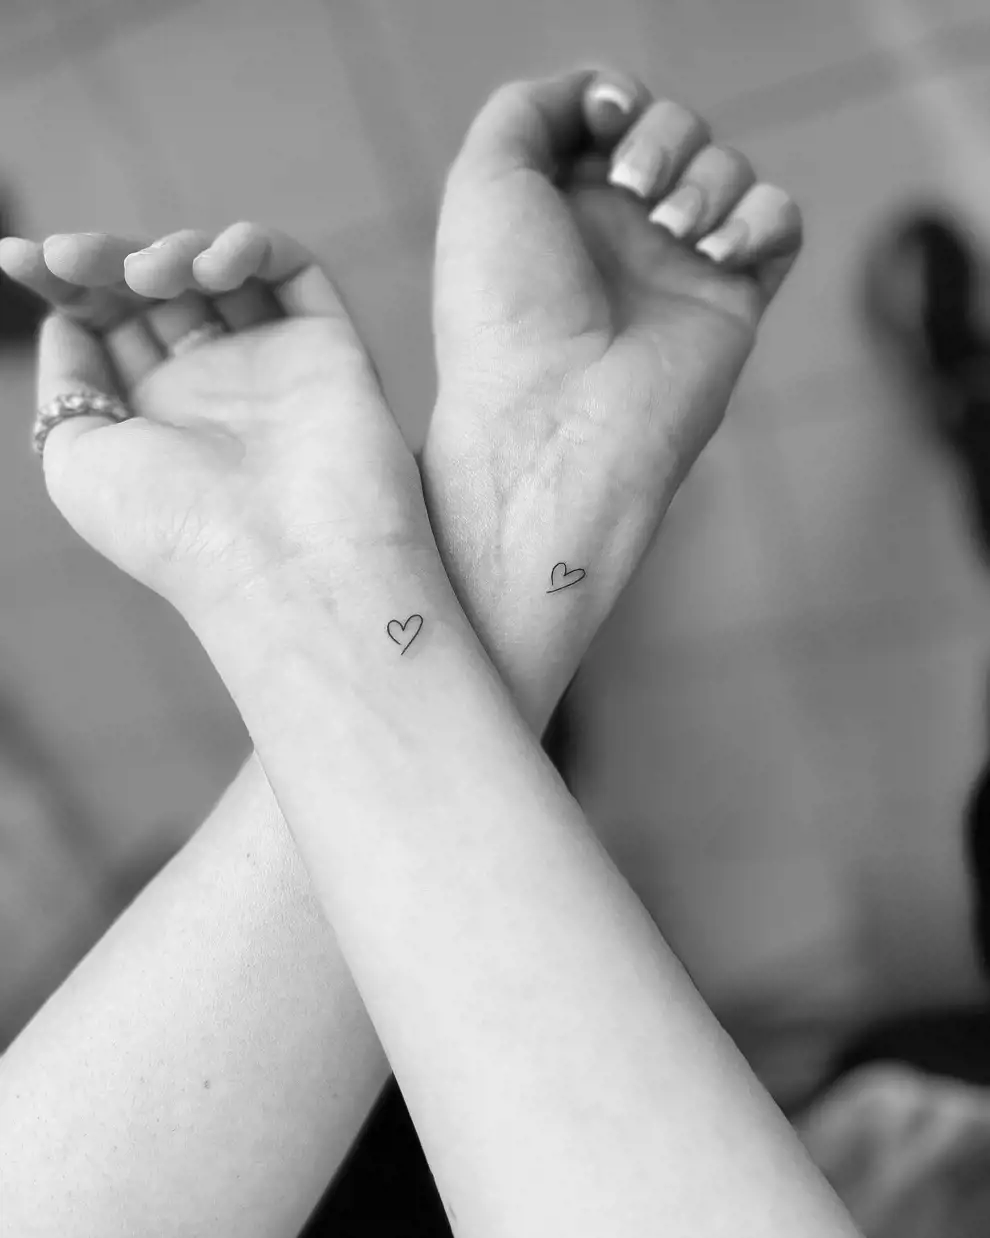 Tatuajes madre e hija: minicorazones